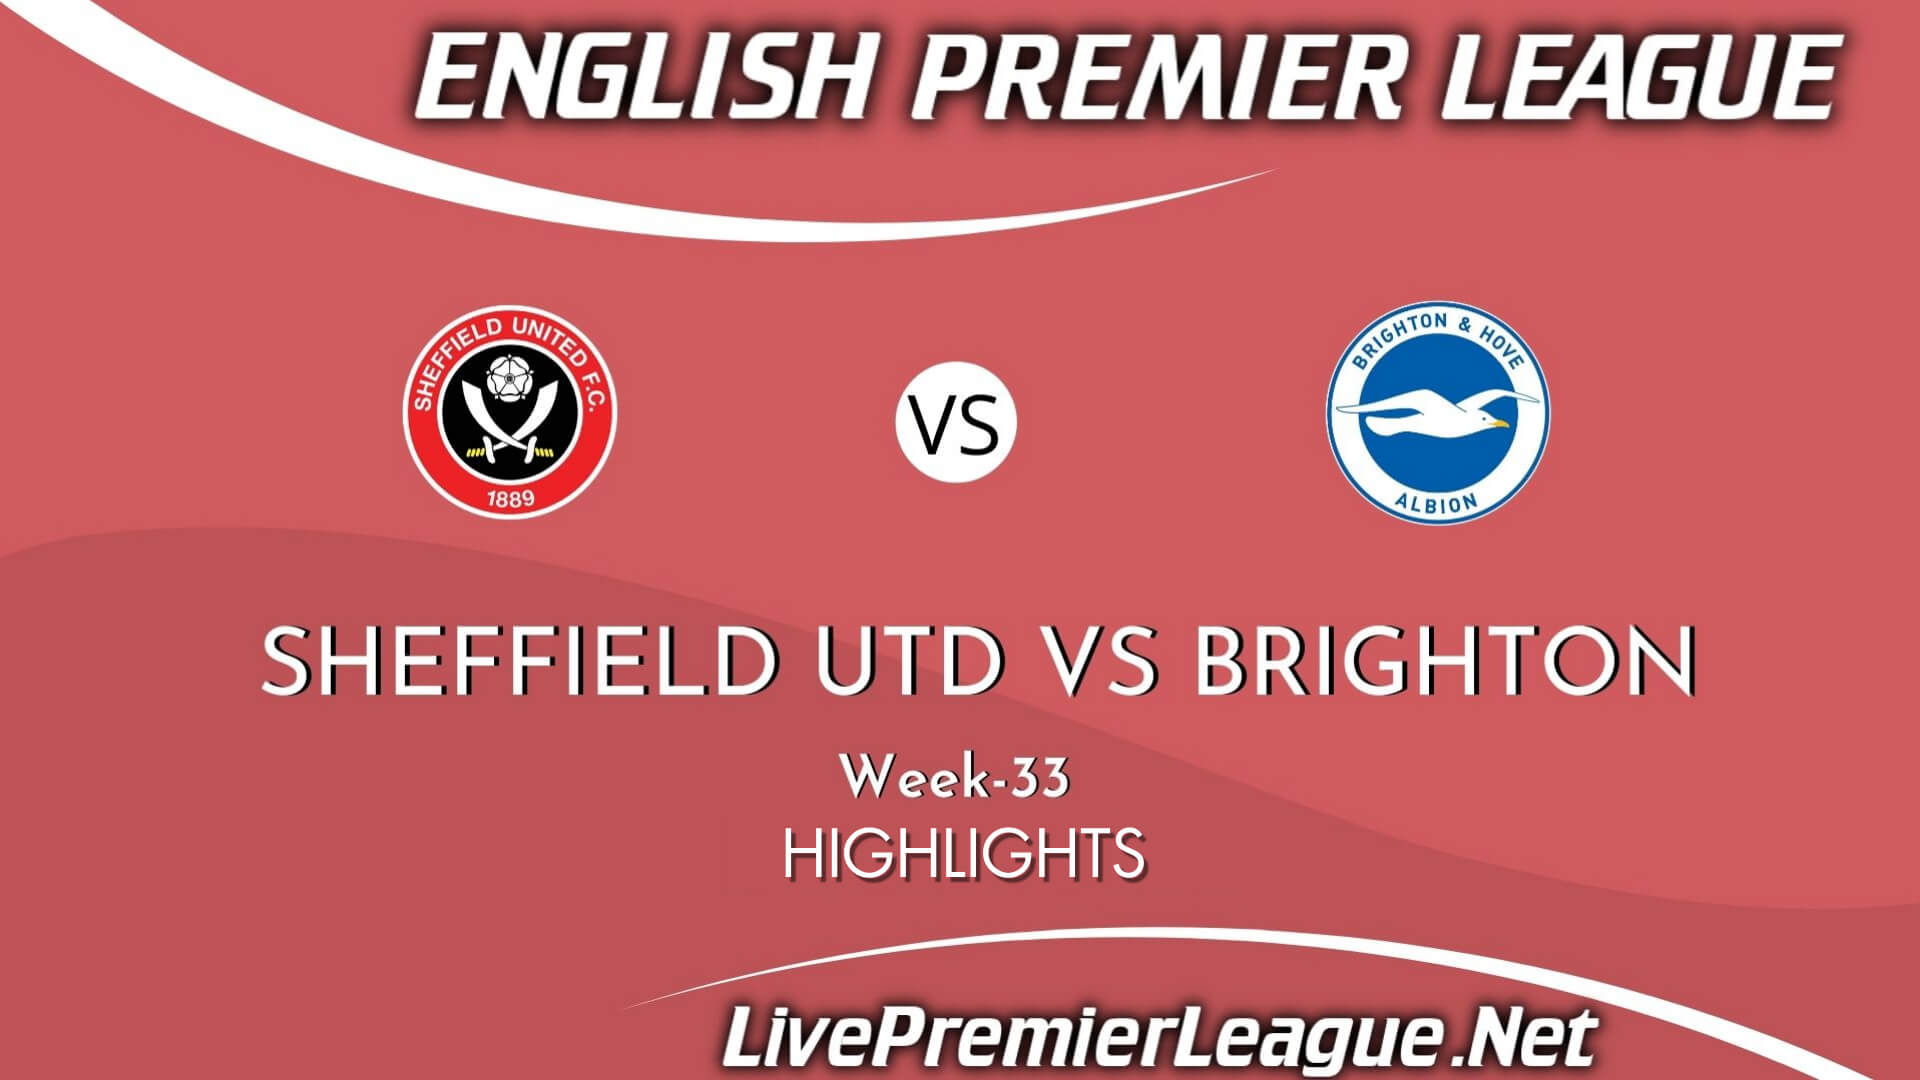 Sheffield United Vs Brighton Highlights 2021 Week 33 EPL